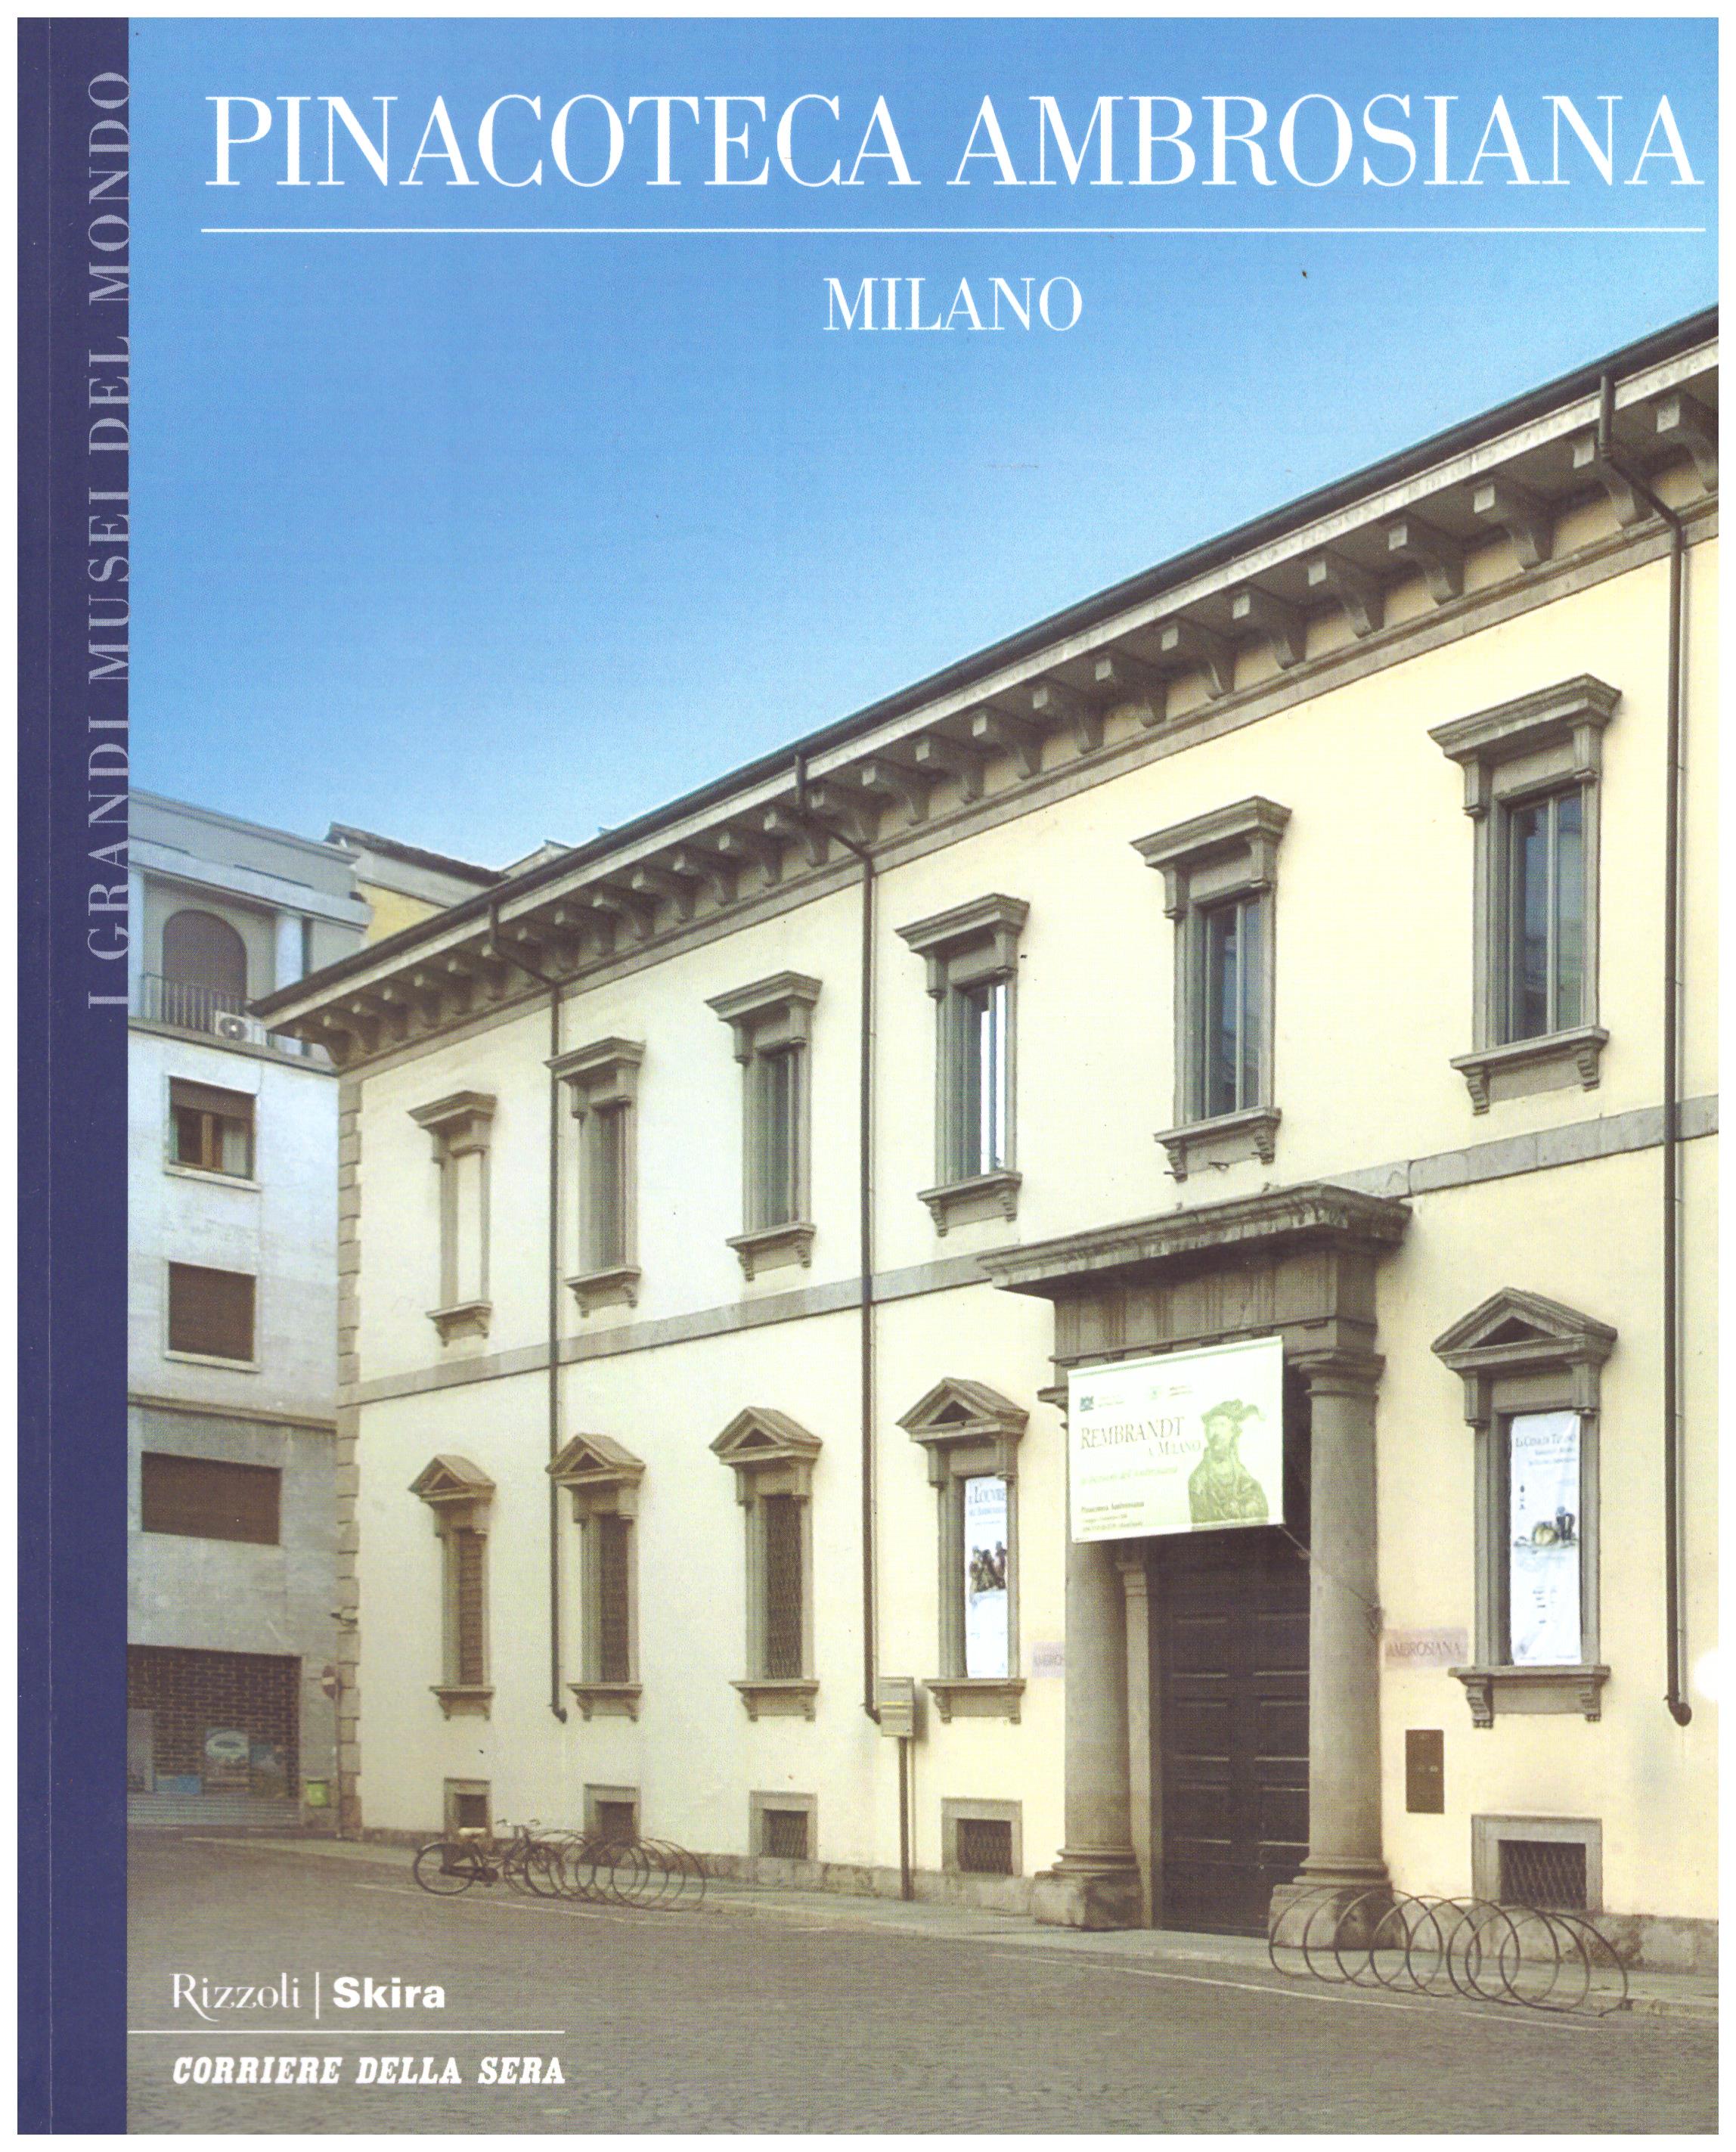 Titolo: I grandi musei del mondo, Pinacoteca ambrosiana Milano Autore : AA.VV.  Editore: Rizzoli Skira, Corriere della Sera 2006